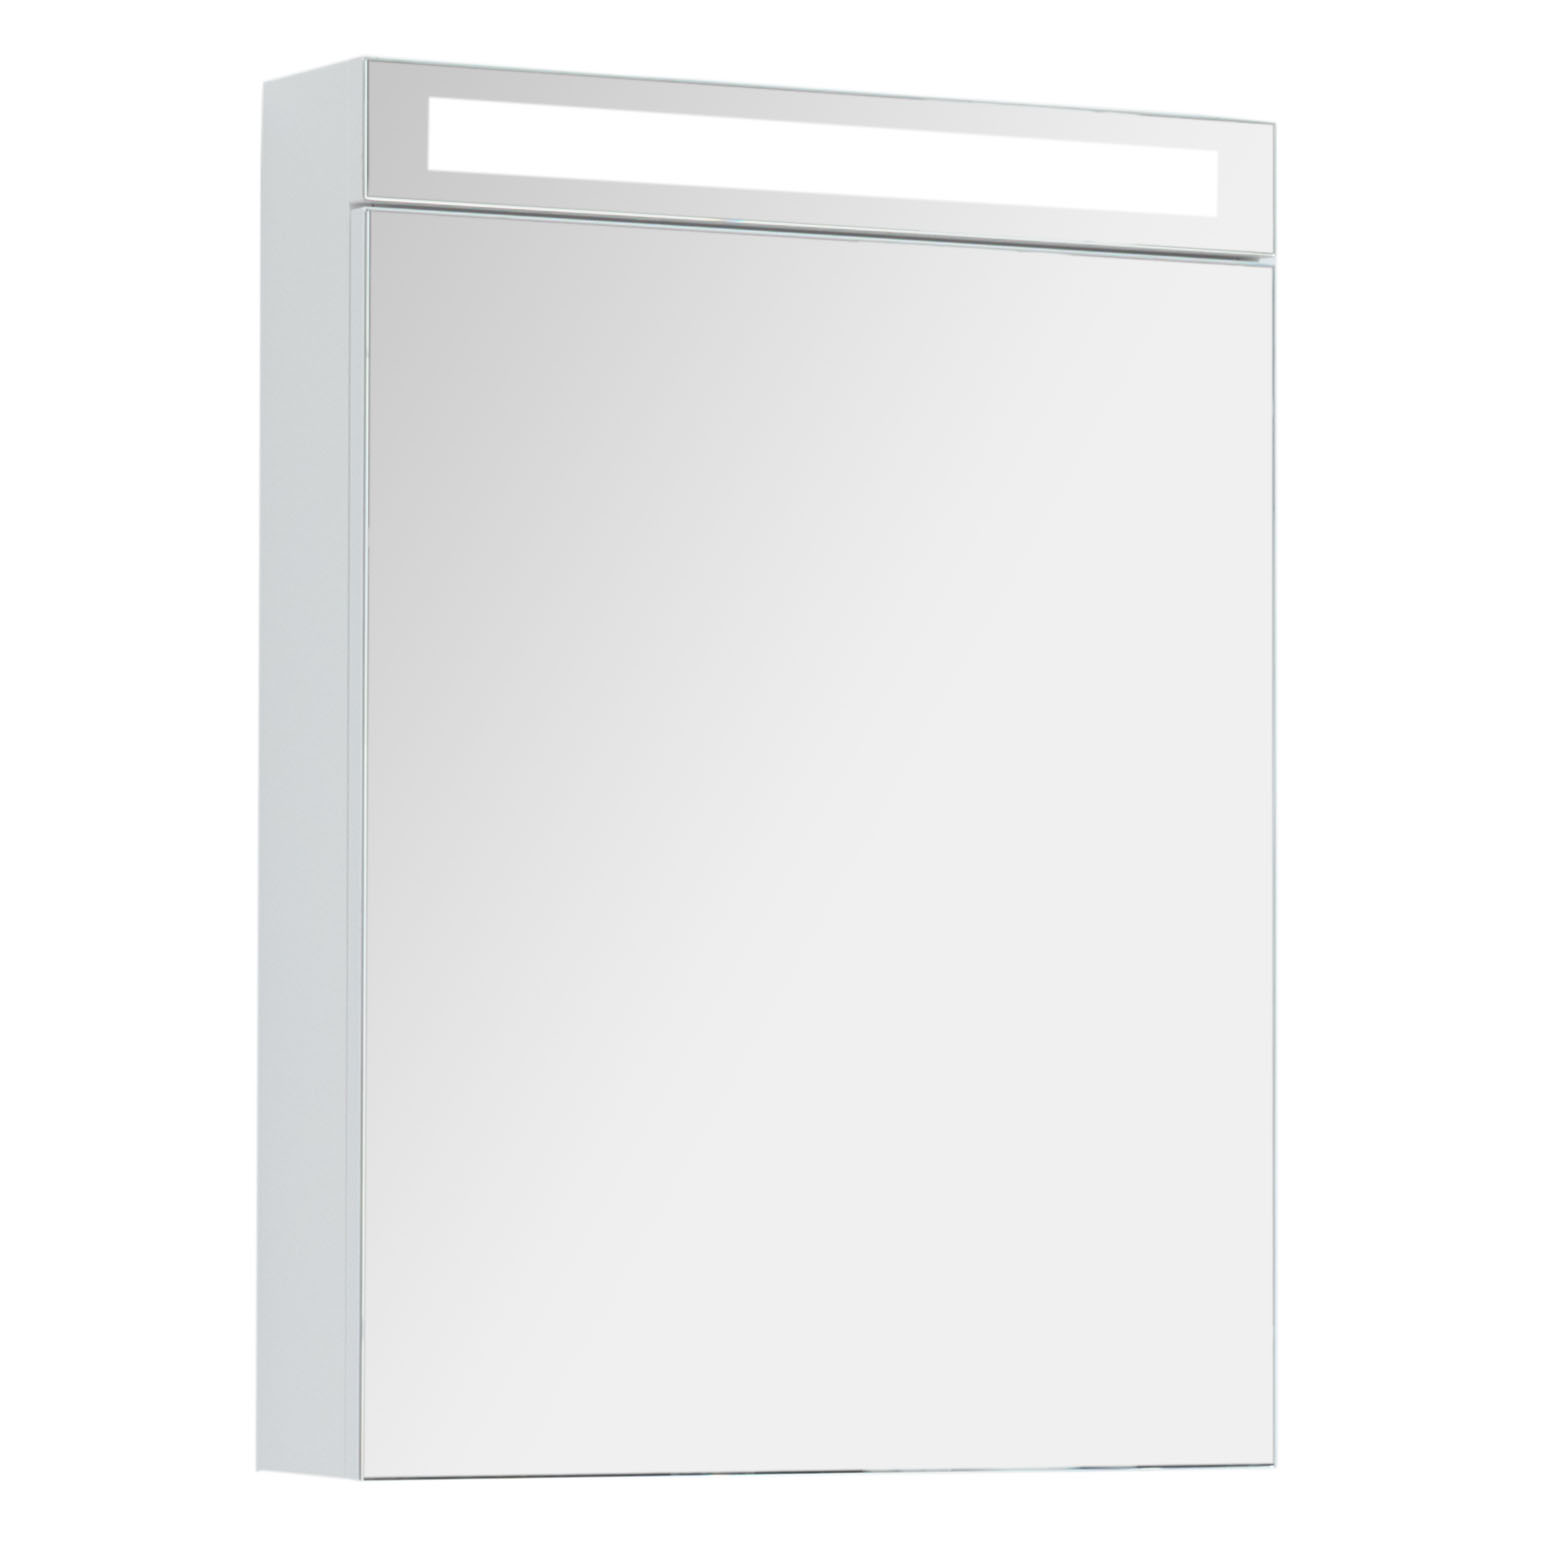 Зеркальный шкаф для ванной Dreja Max 60 белый глянец зеркальный шкаф emmy вэла 60х70 правый белый wel60bel r